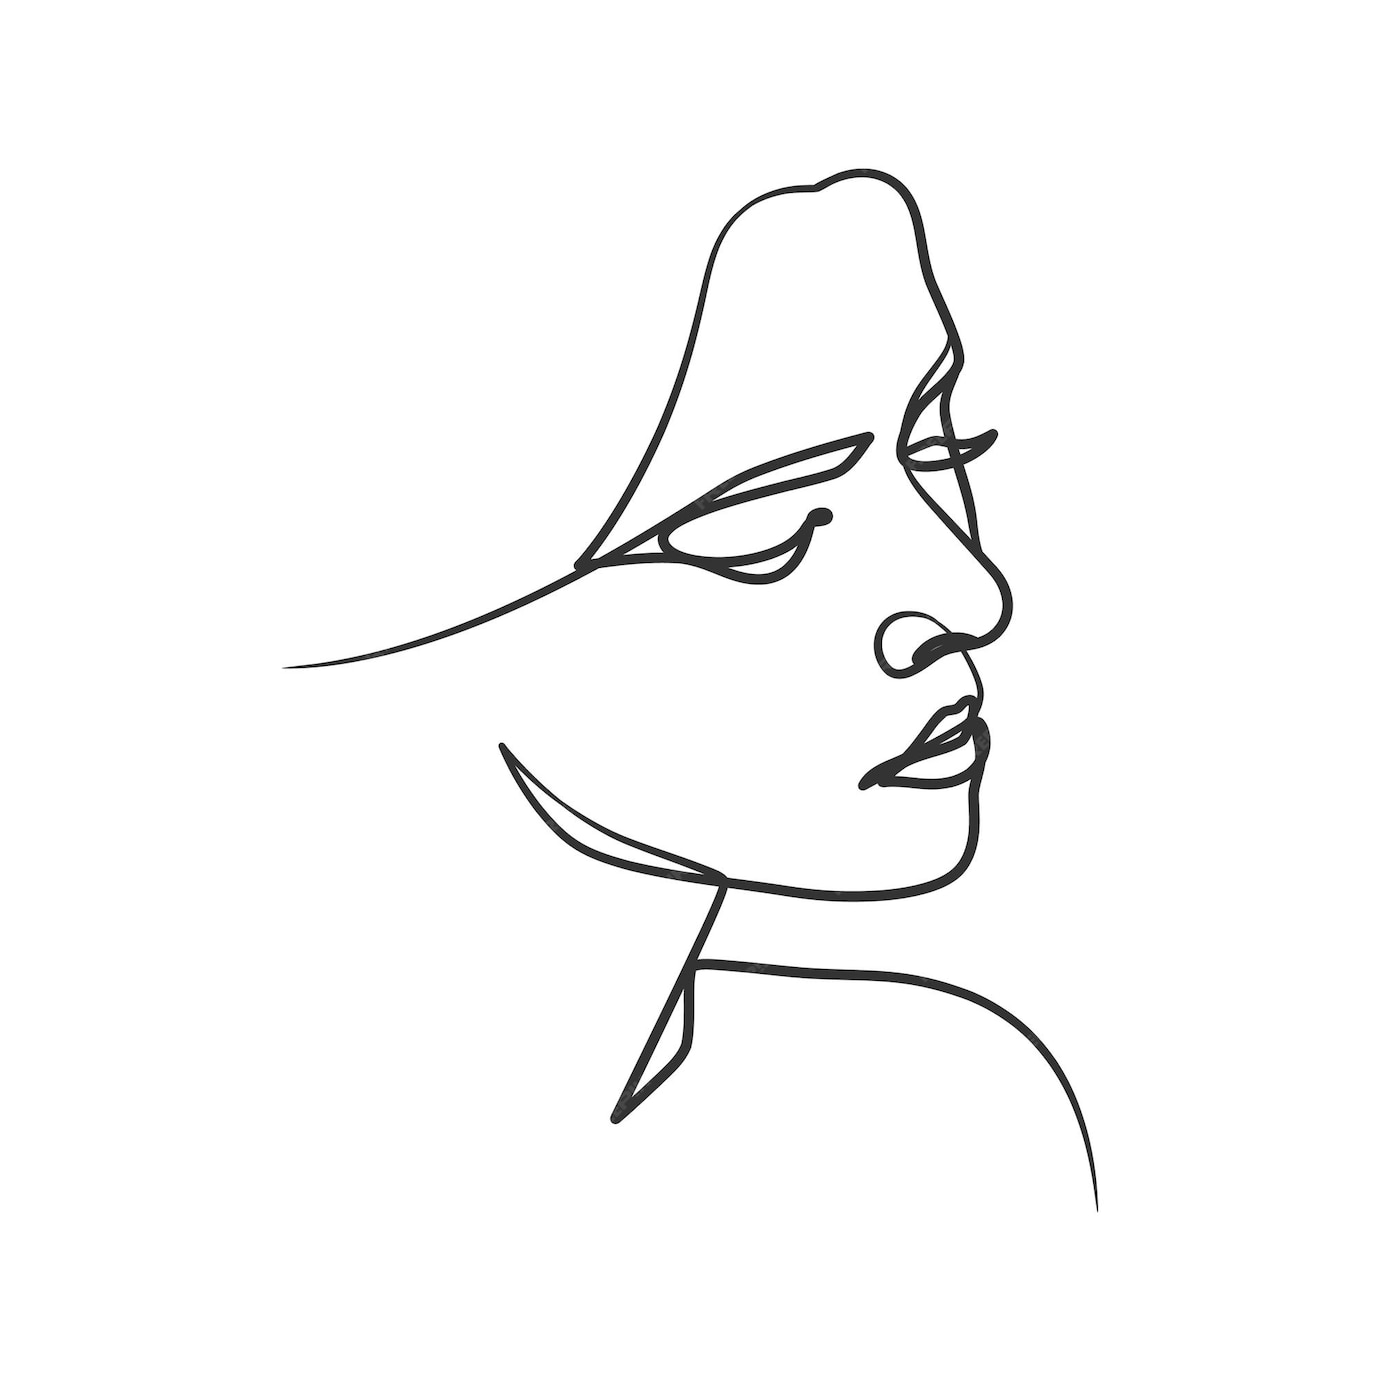 Dibujo De Línea Continua De Cara De Mujer Lindo Retrato Lineal Femenino Retrato De Mujer De